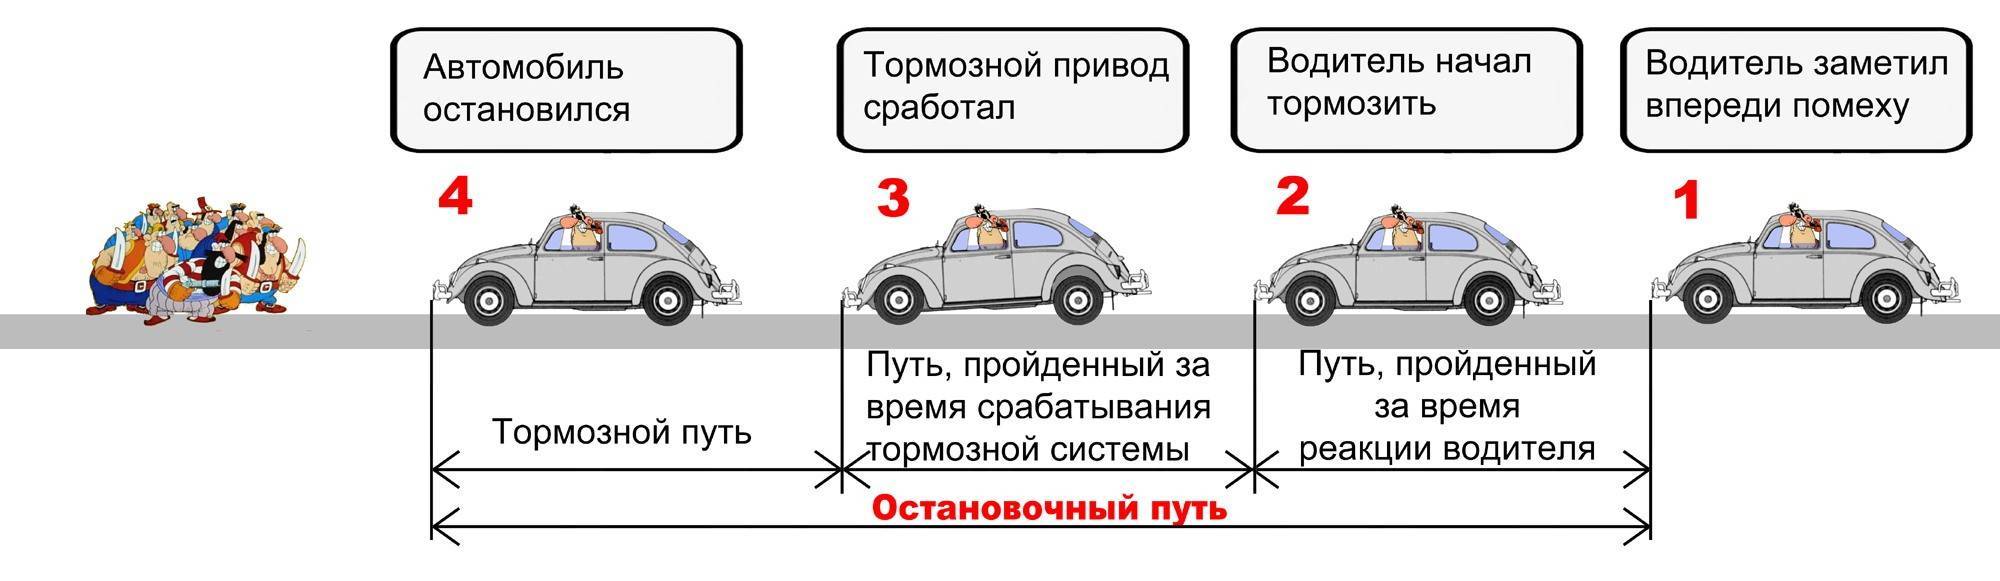 Схема остановочного пути автомобиля